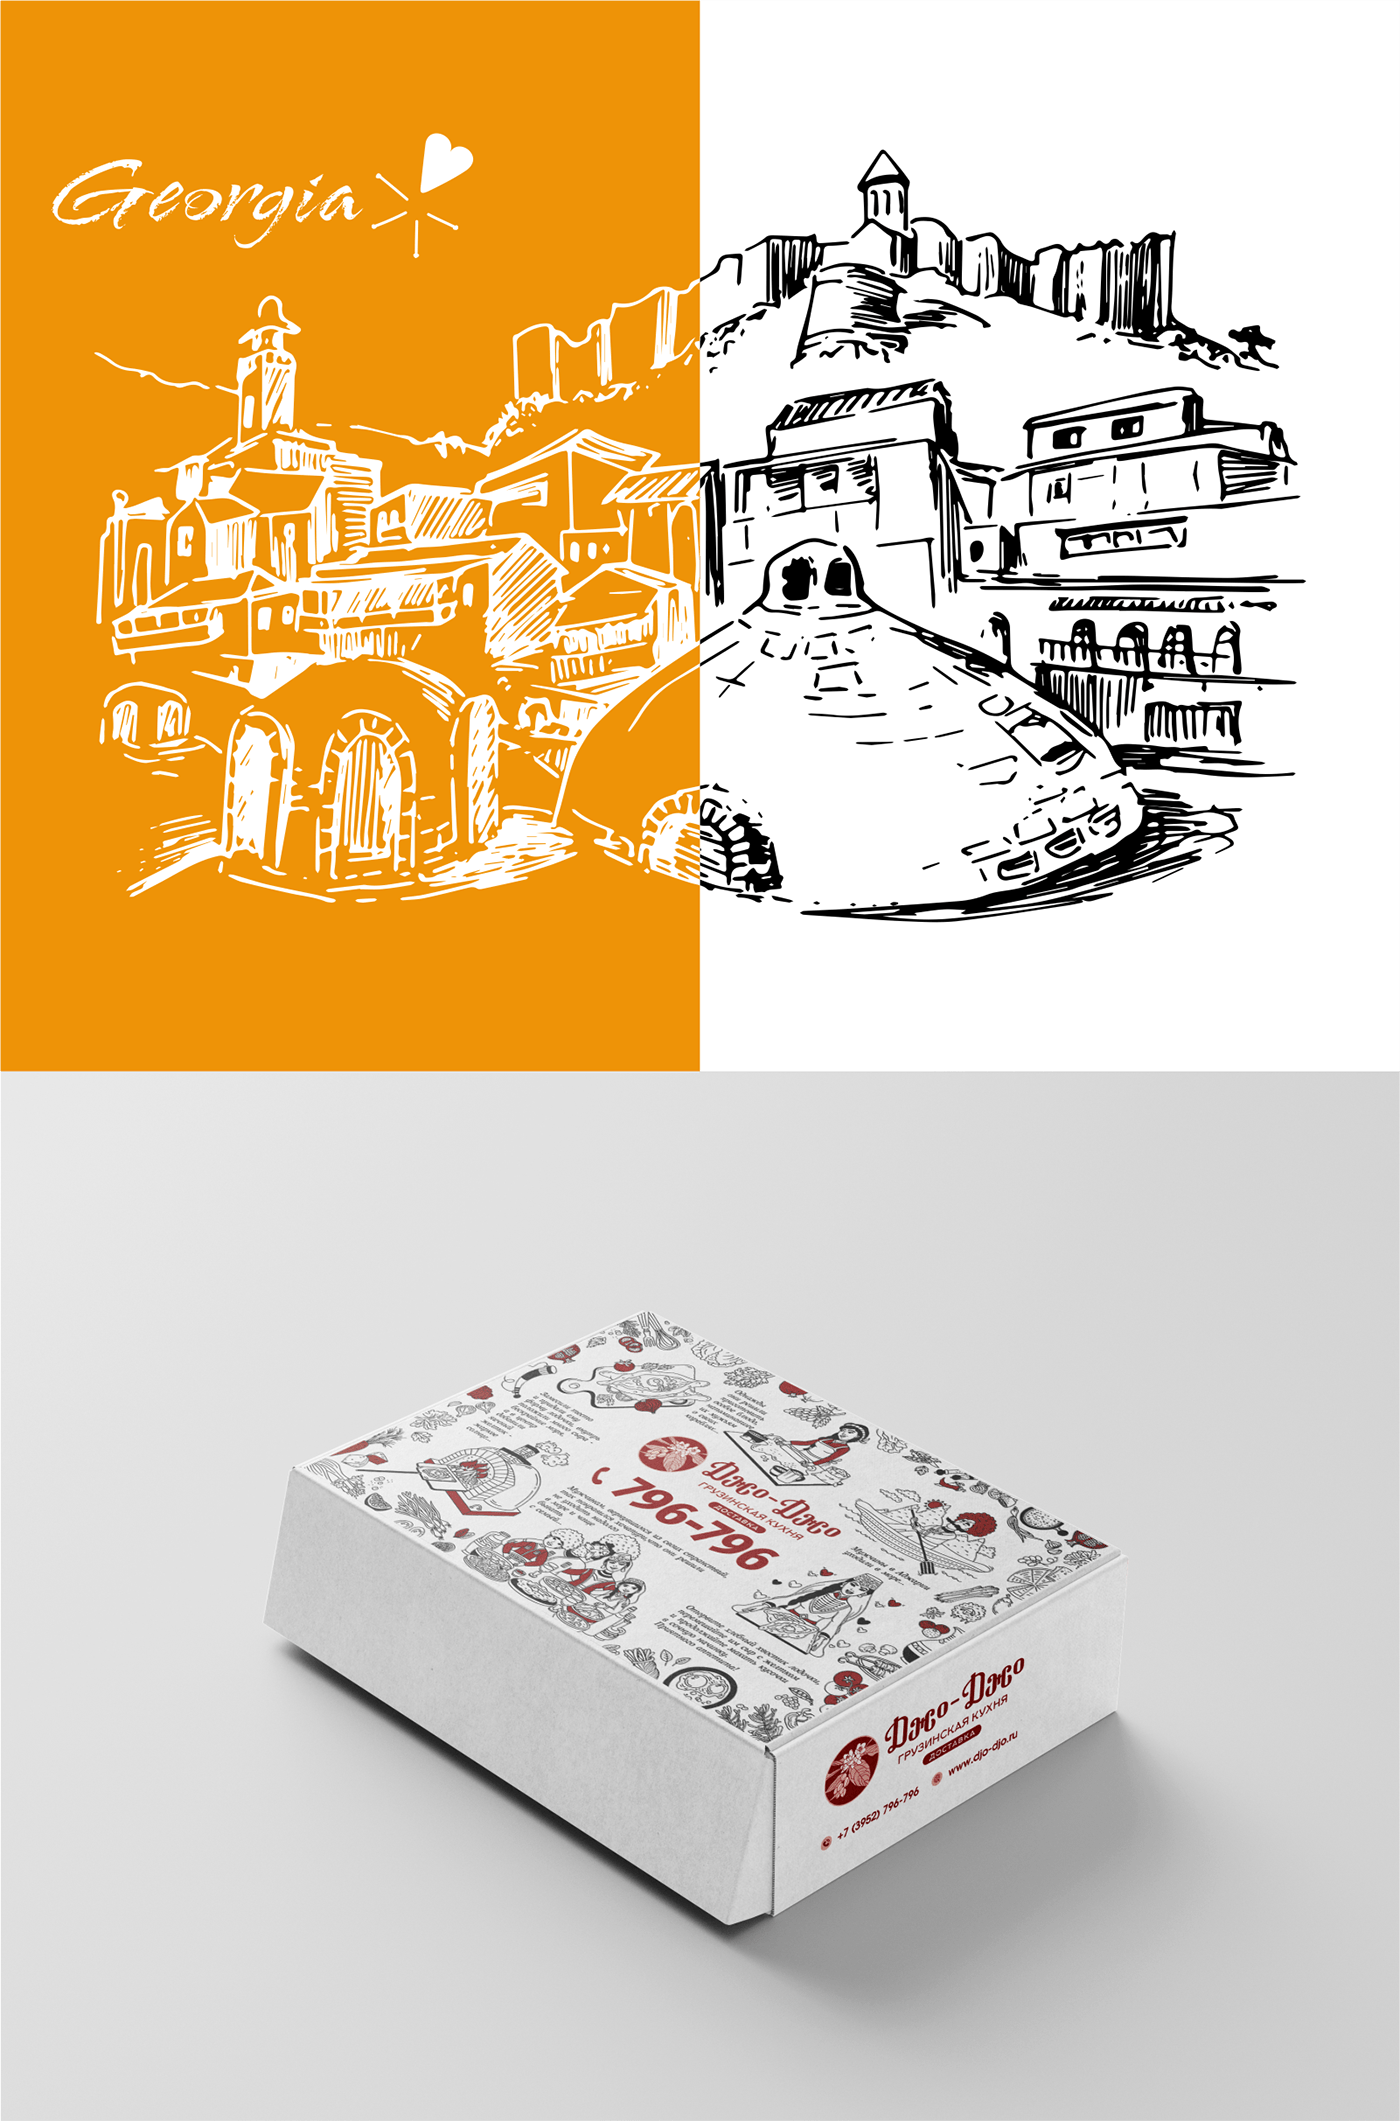 Development of illustrations for khachapuri packaging
of the Georgian cuisine restaurant "Jo-Jo".